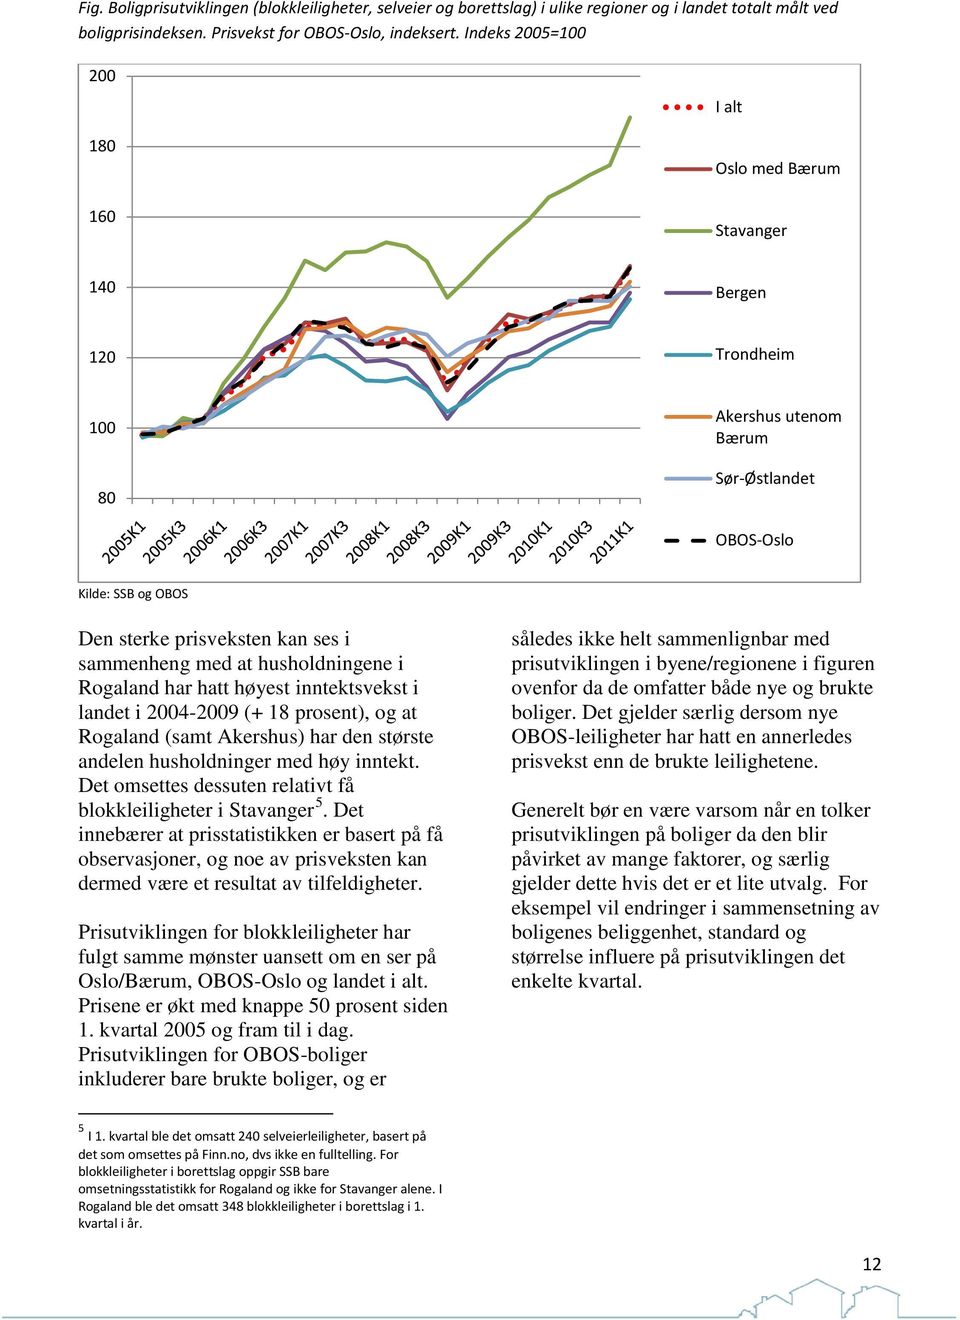 husholdningene i Rogaland har hatt høyest inntektsvekst i landet i 2004-2009 (+ 18 prosent), og at Rogaland (samt Akershus) har den største andelen husholdninger med høy inntekt.